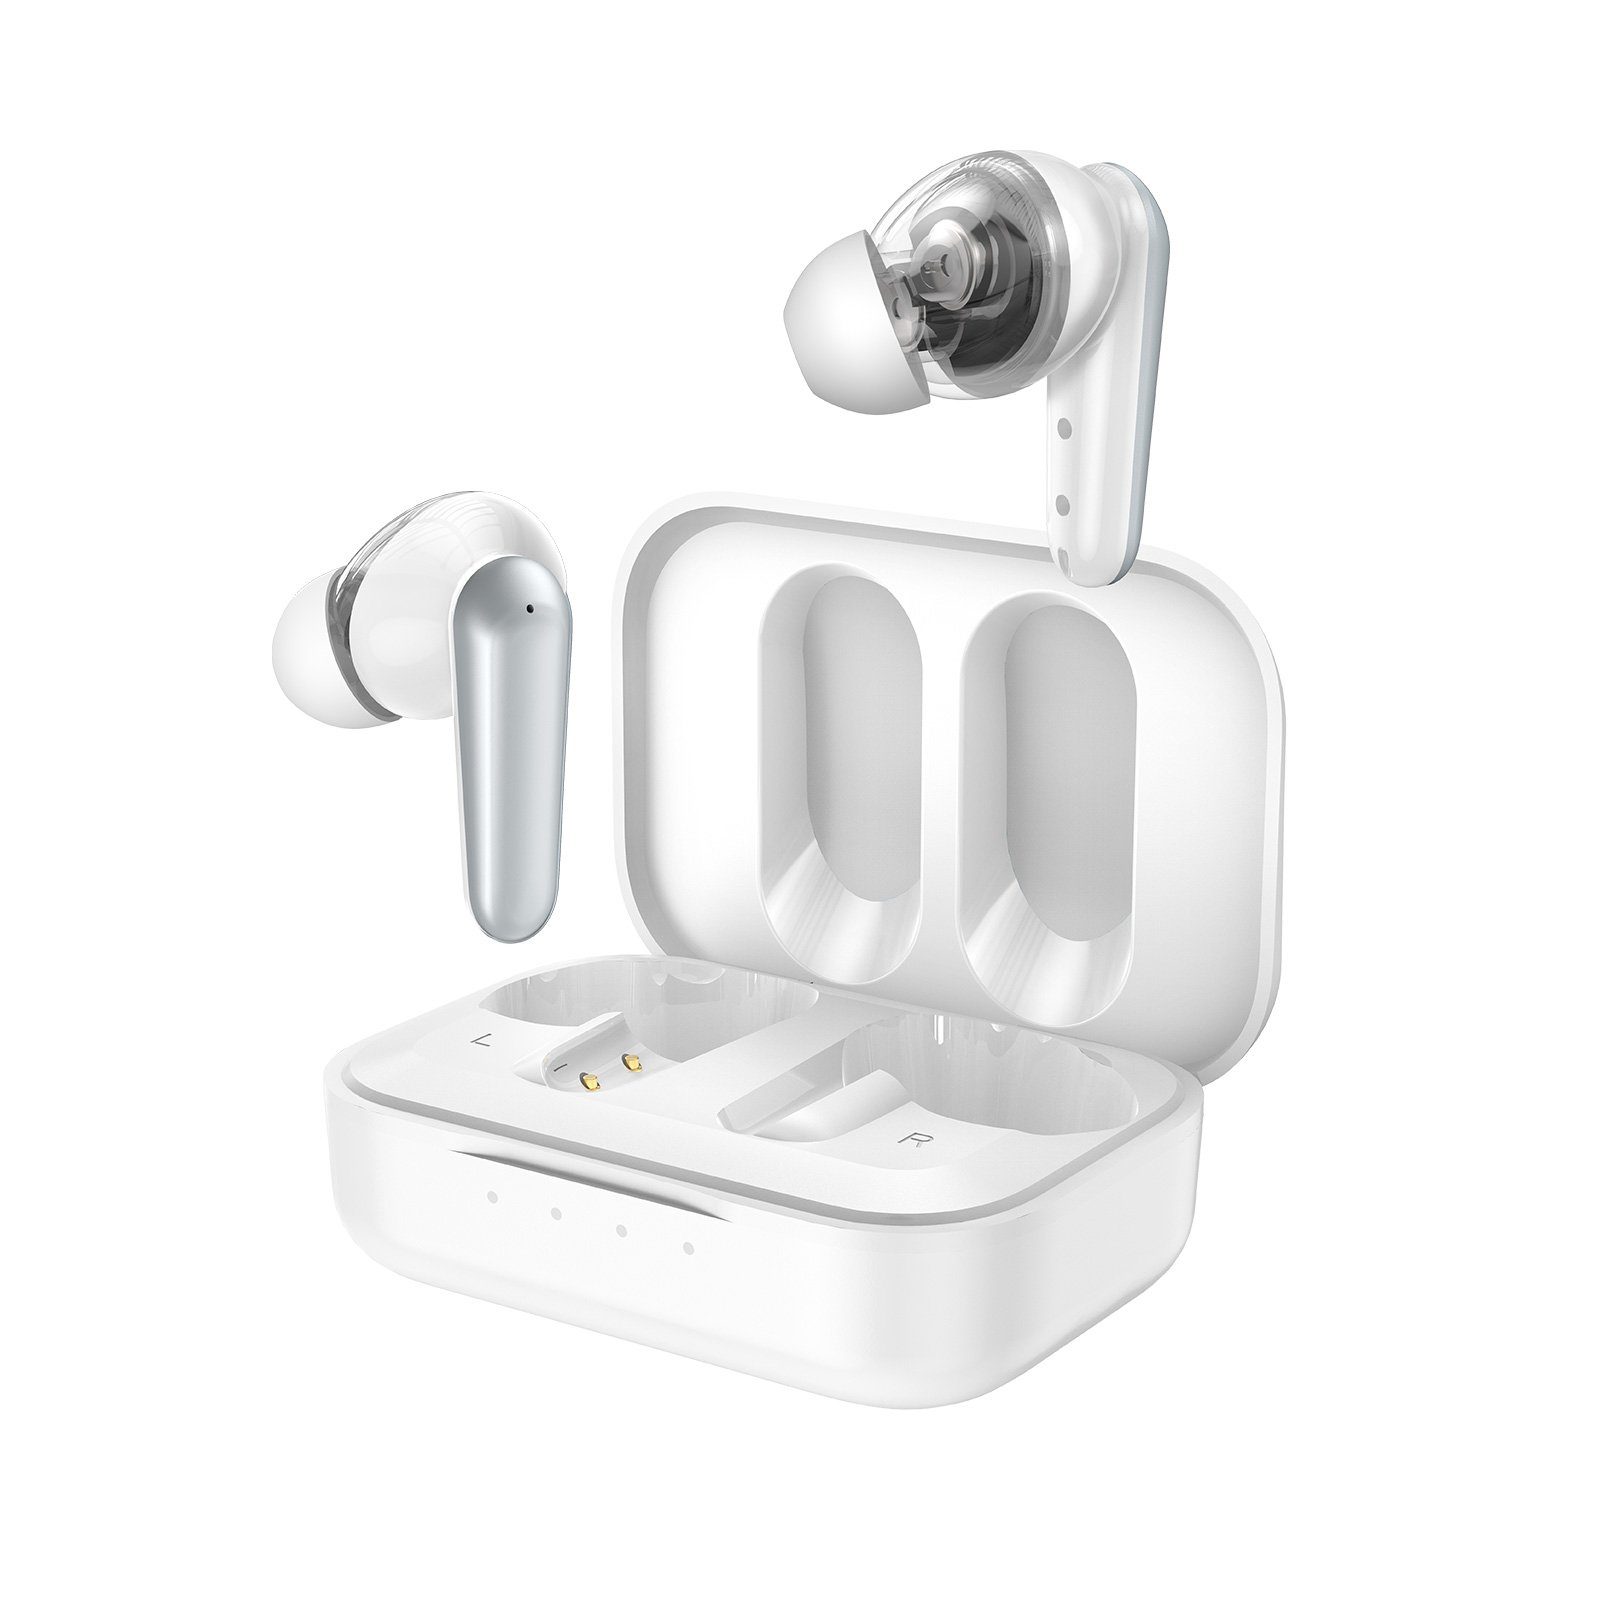 RIVERSONG True Sound Kopfhörer Bluetooth Wireless Weiß wireless In-Ear-Kopfhörer (Leichtes und kompaktes Design, Angenehmer Tragekomfort, HD-Klang, Touch-Steuerung, Stabile BT5.0-Verbindung, In Ear Kopfhörer Bluetooth - Kopfhörer HD-Klang)